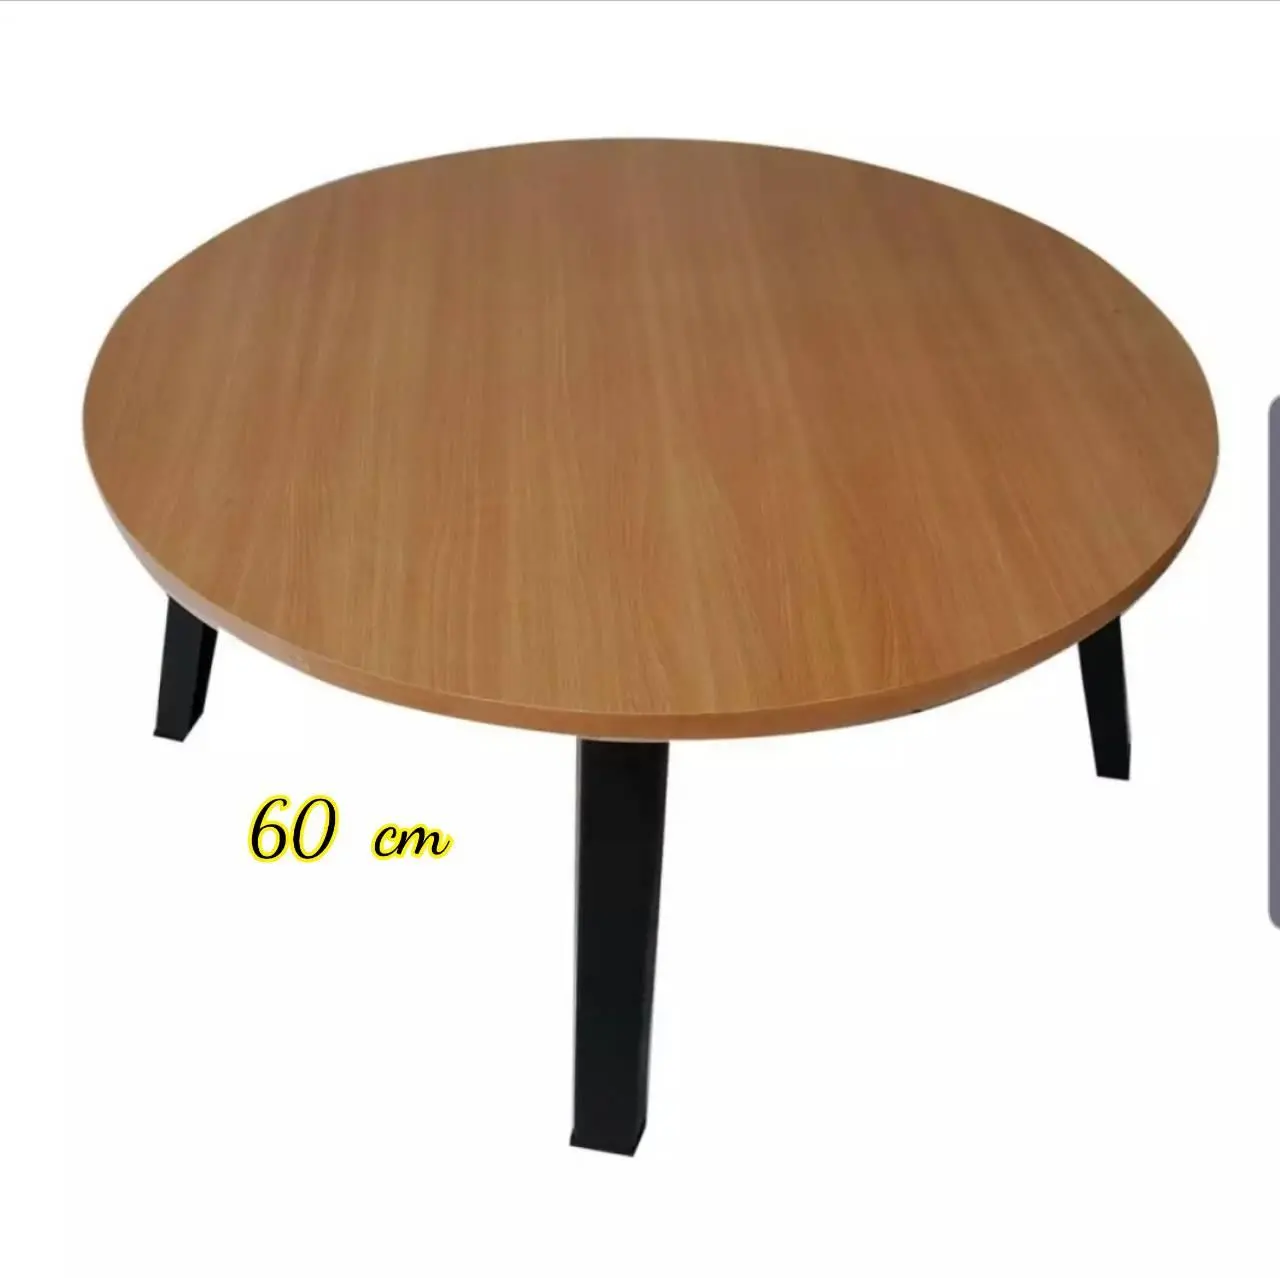 60  cm โต๊ะญี่ปุ่น  โต๊ะกลม  สีบีช( 24 นิ้ว)